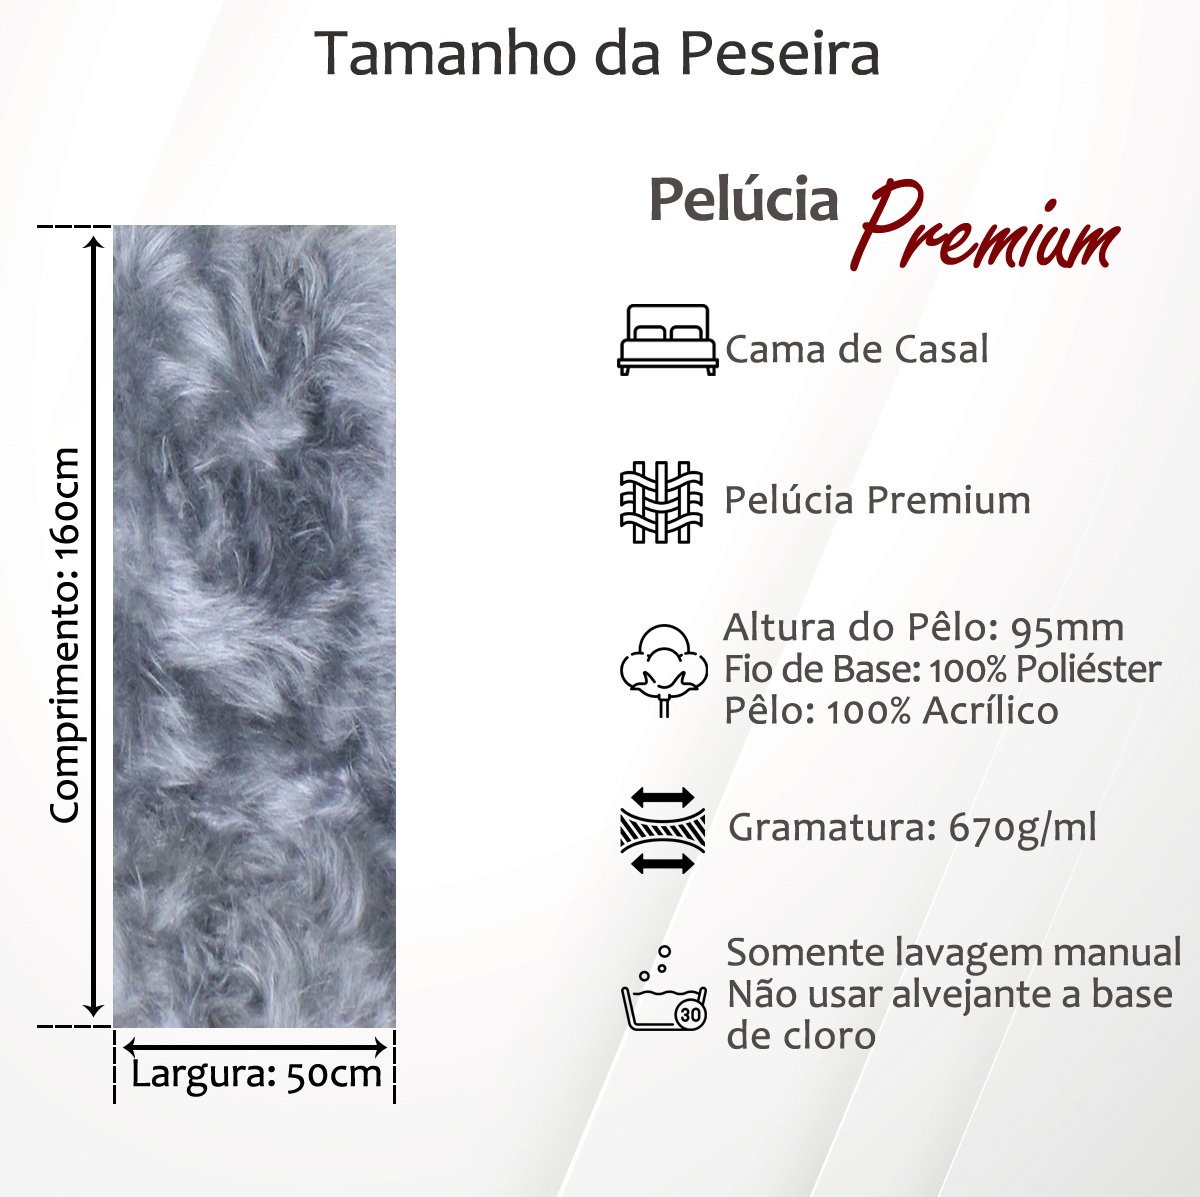 Peseira Premium Pelúcia Pelo Alto Parta Cama de Casal Comum 1,60mx50cm: Branco-Cru - 4